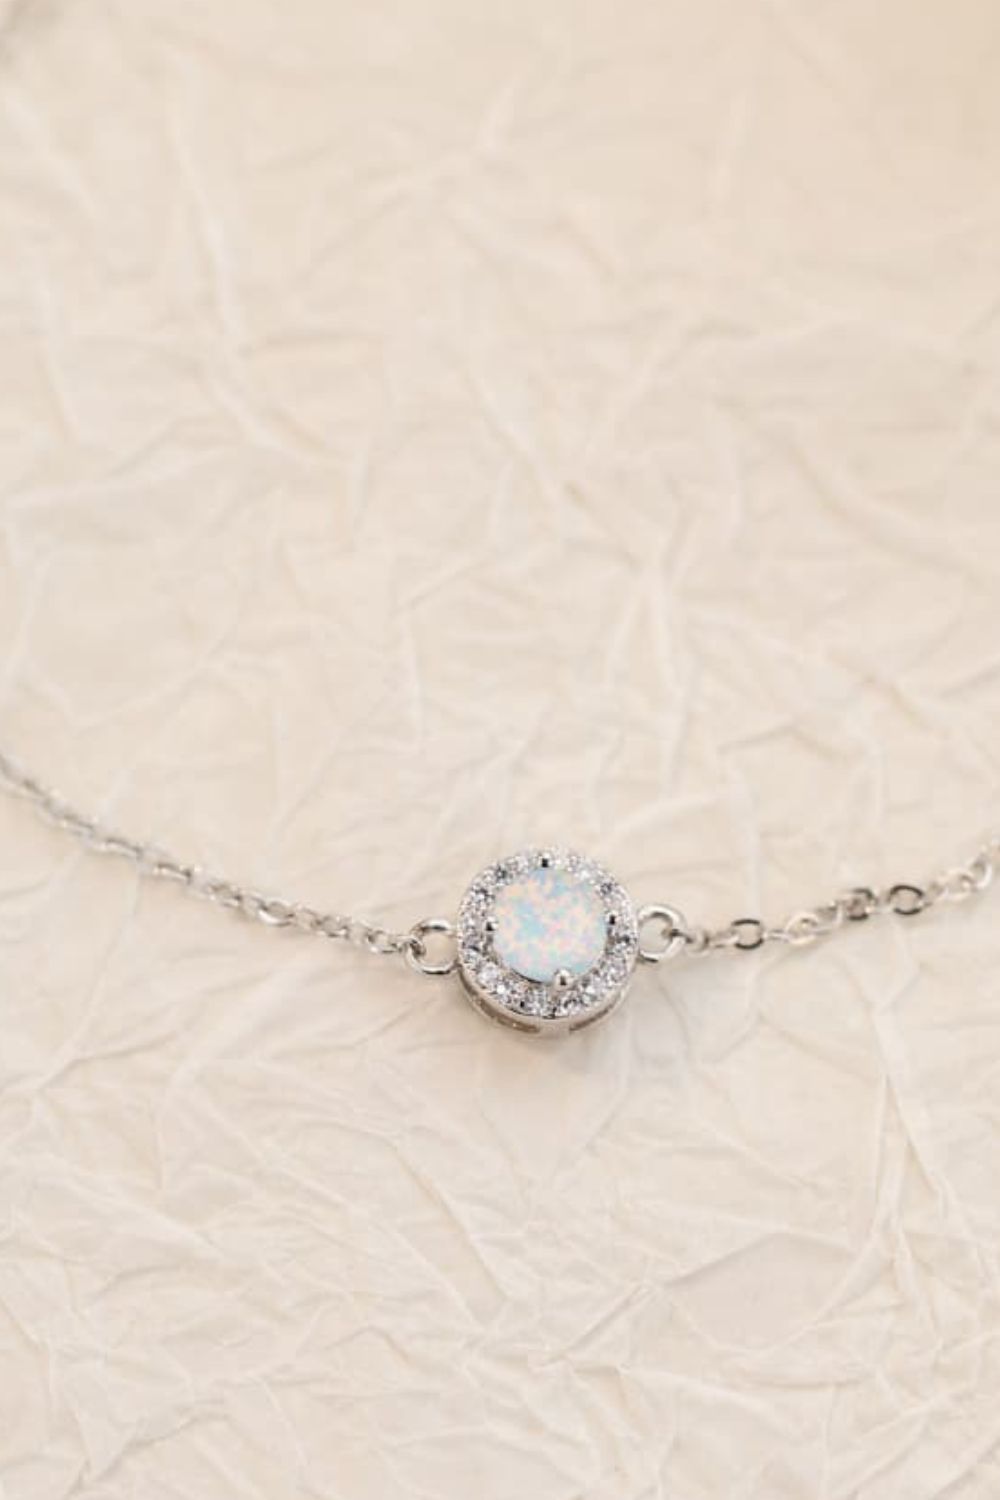 Love You Too Much Opal Bracelet - Women’s Jewelry - Bracelets - 6 - 2024